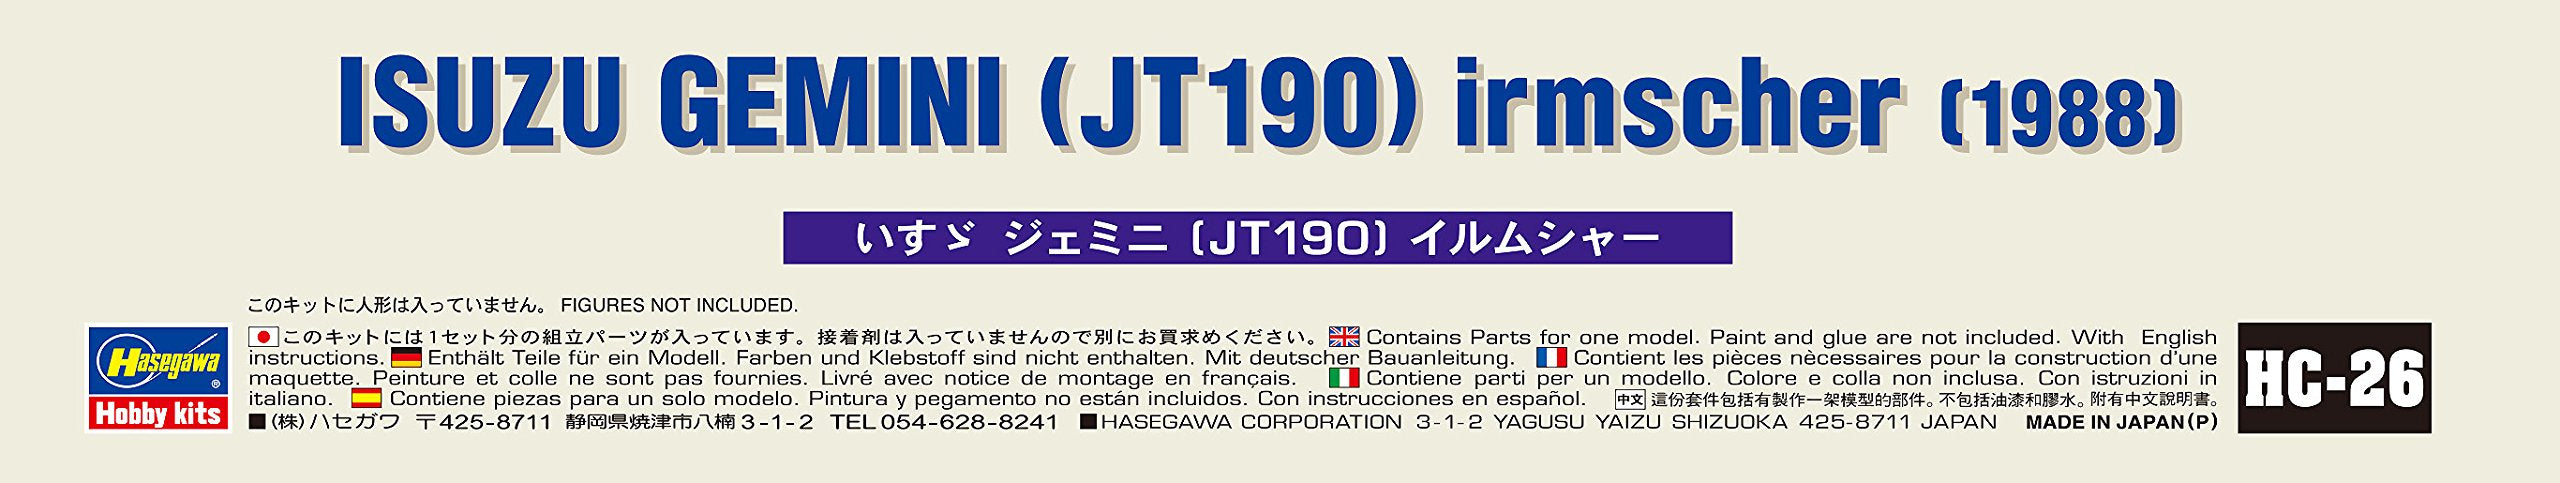 Hasegawa 1/24 Histric Car Series HC-26 Isuzu Gemini (JT190) Irmscher Model Kit_9